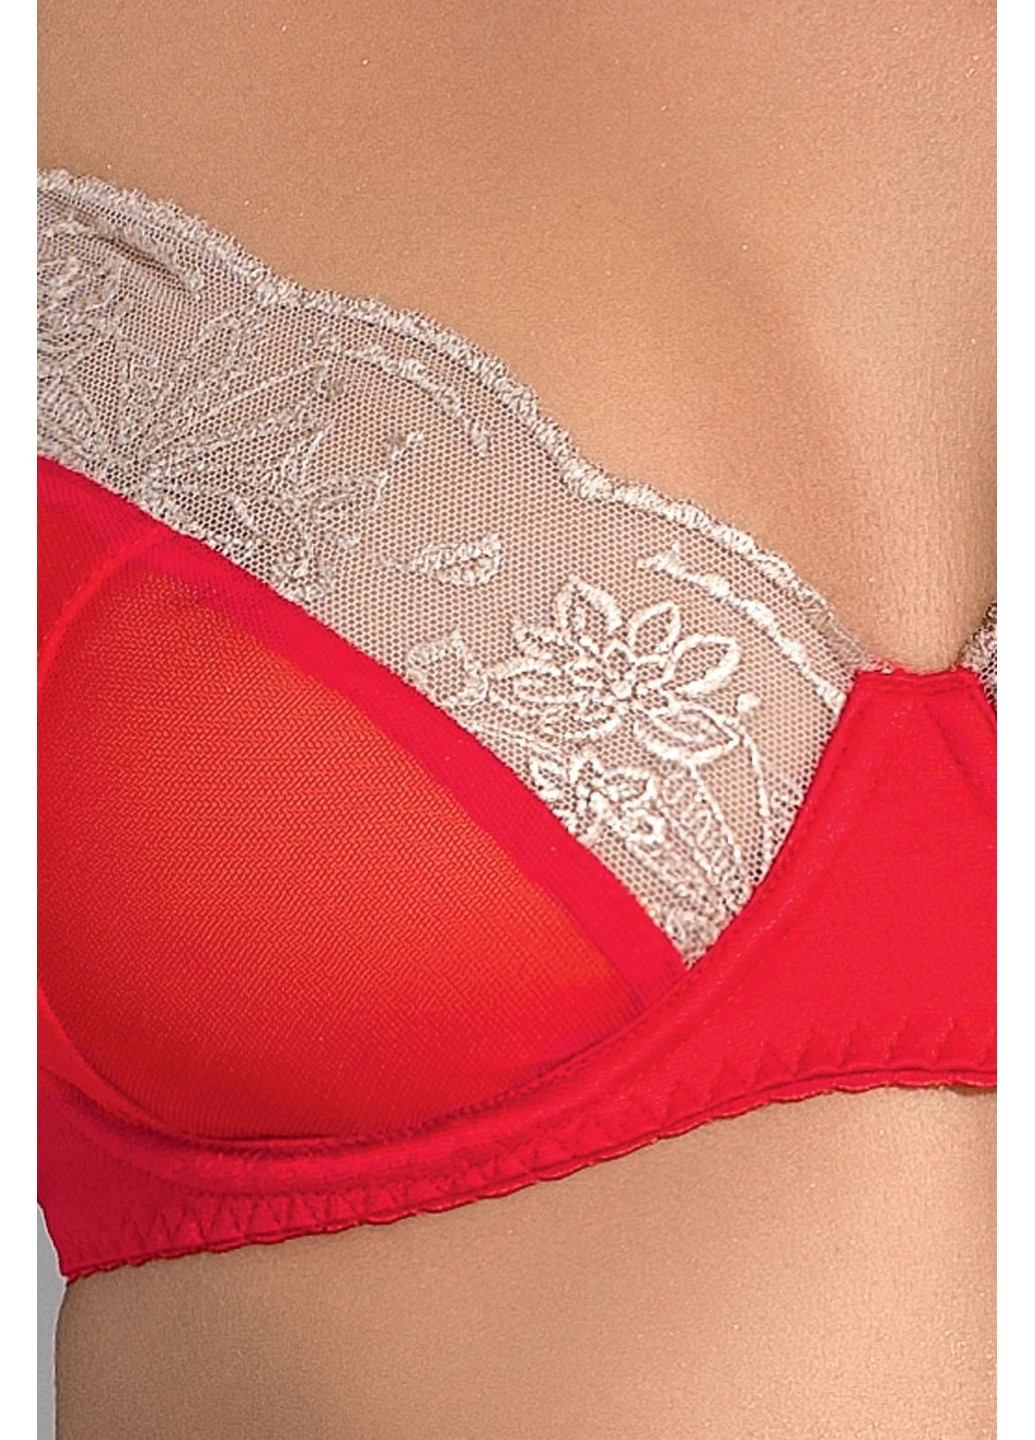 Комплект белья LORAINE SET red L/XL - Exclusive: лиф, стринги, пояс для чулок Passion (255457791)